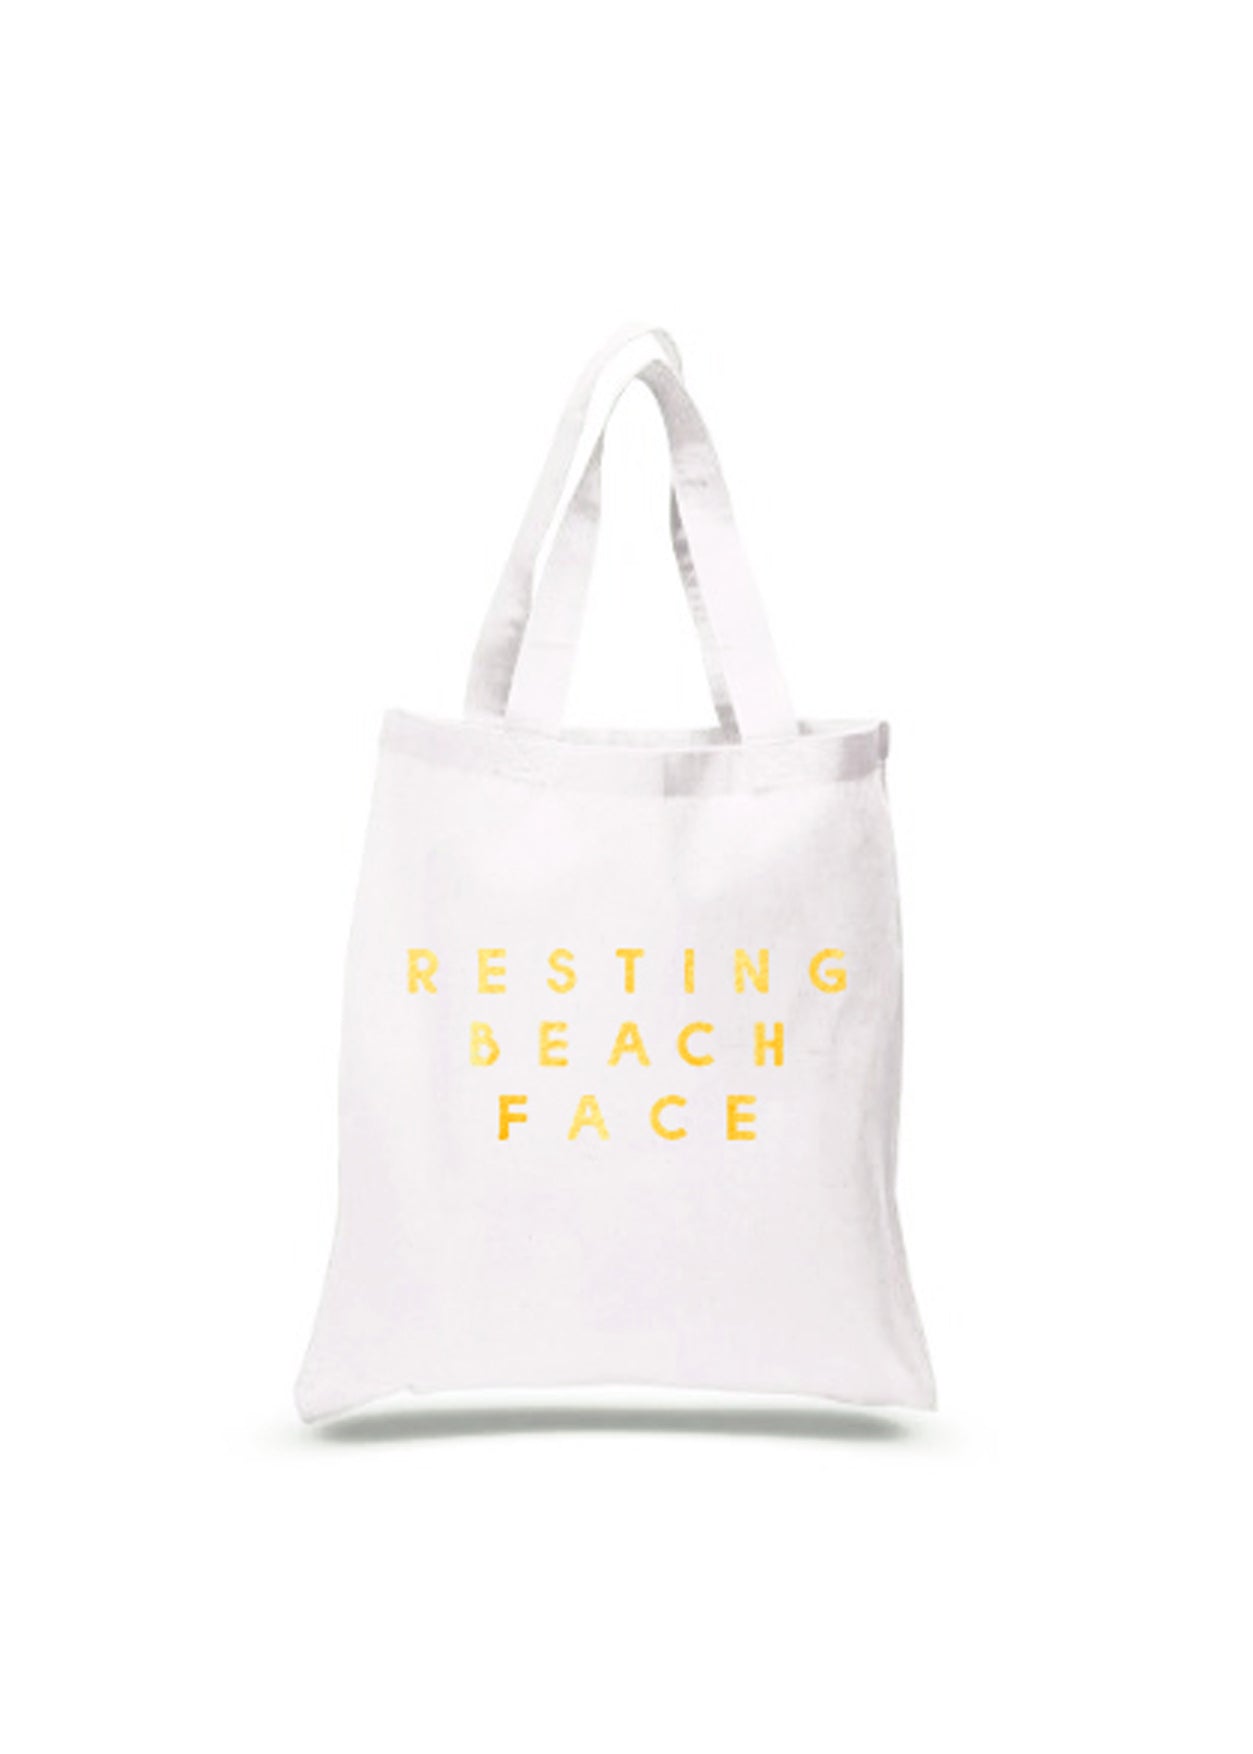 Beachwear for girls